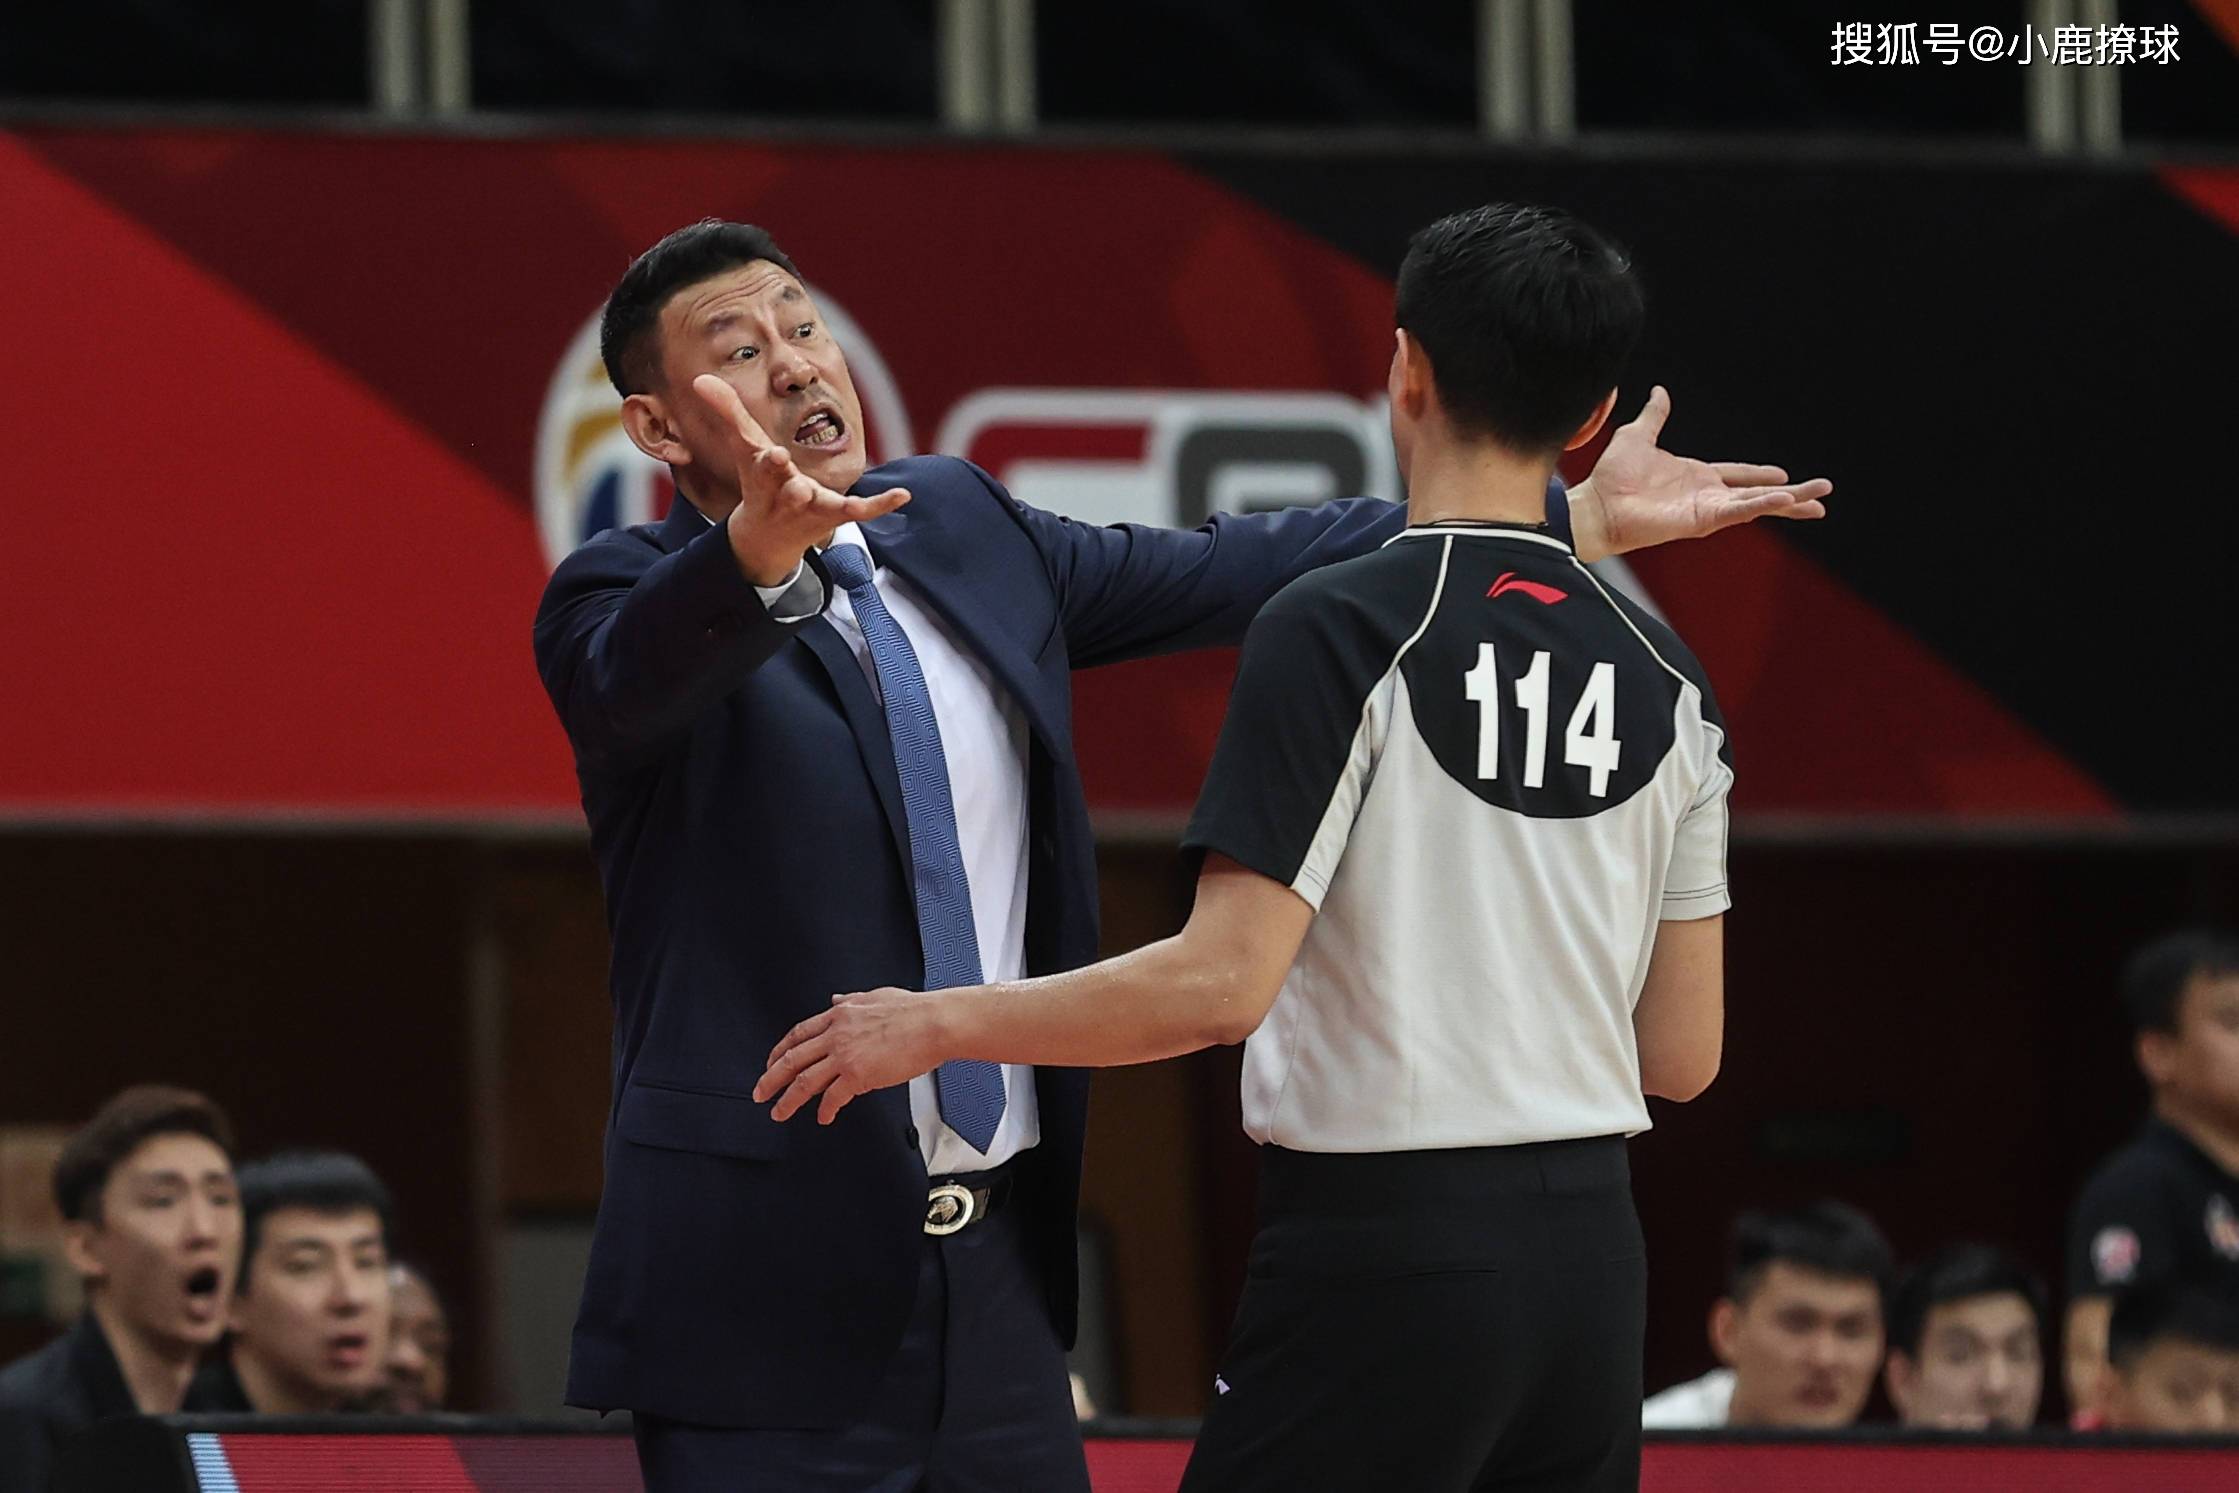 从中国男篮主教练,再到cba主教练,李楠指导退役之后的身份转变很成功